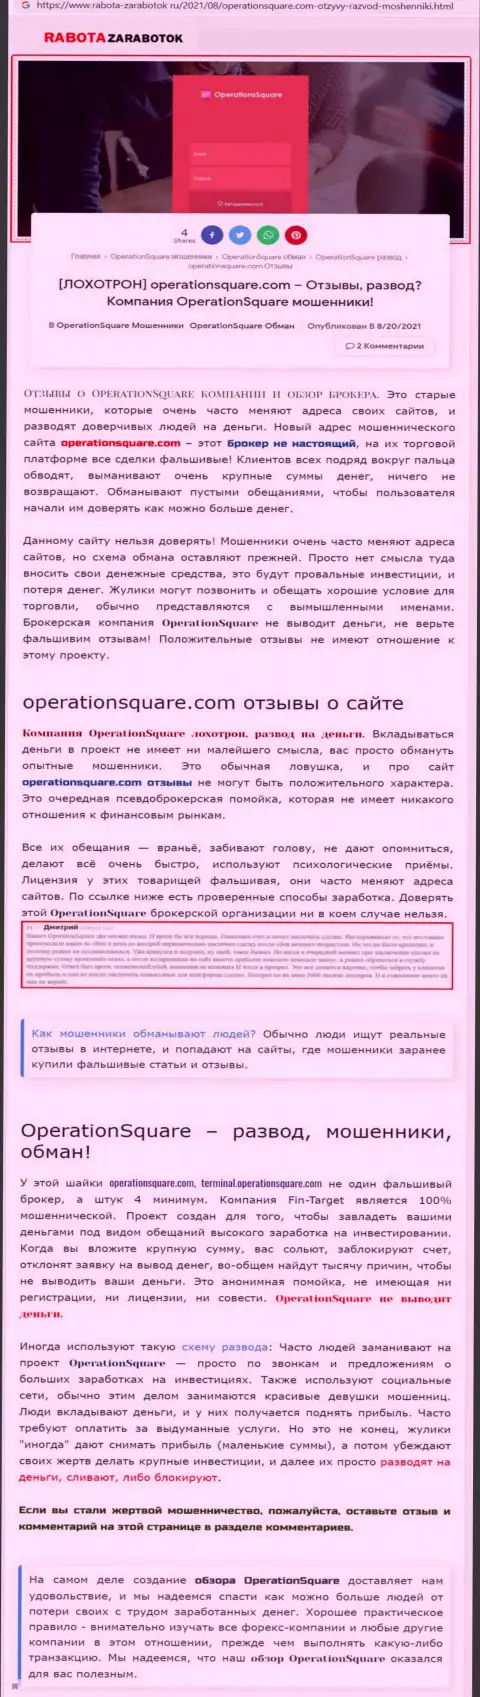 OperationSquare Com - это МОШЕННИКИ !!! Схемы слива и отзывы пострадавших